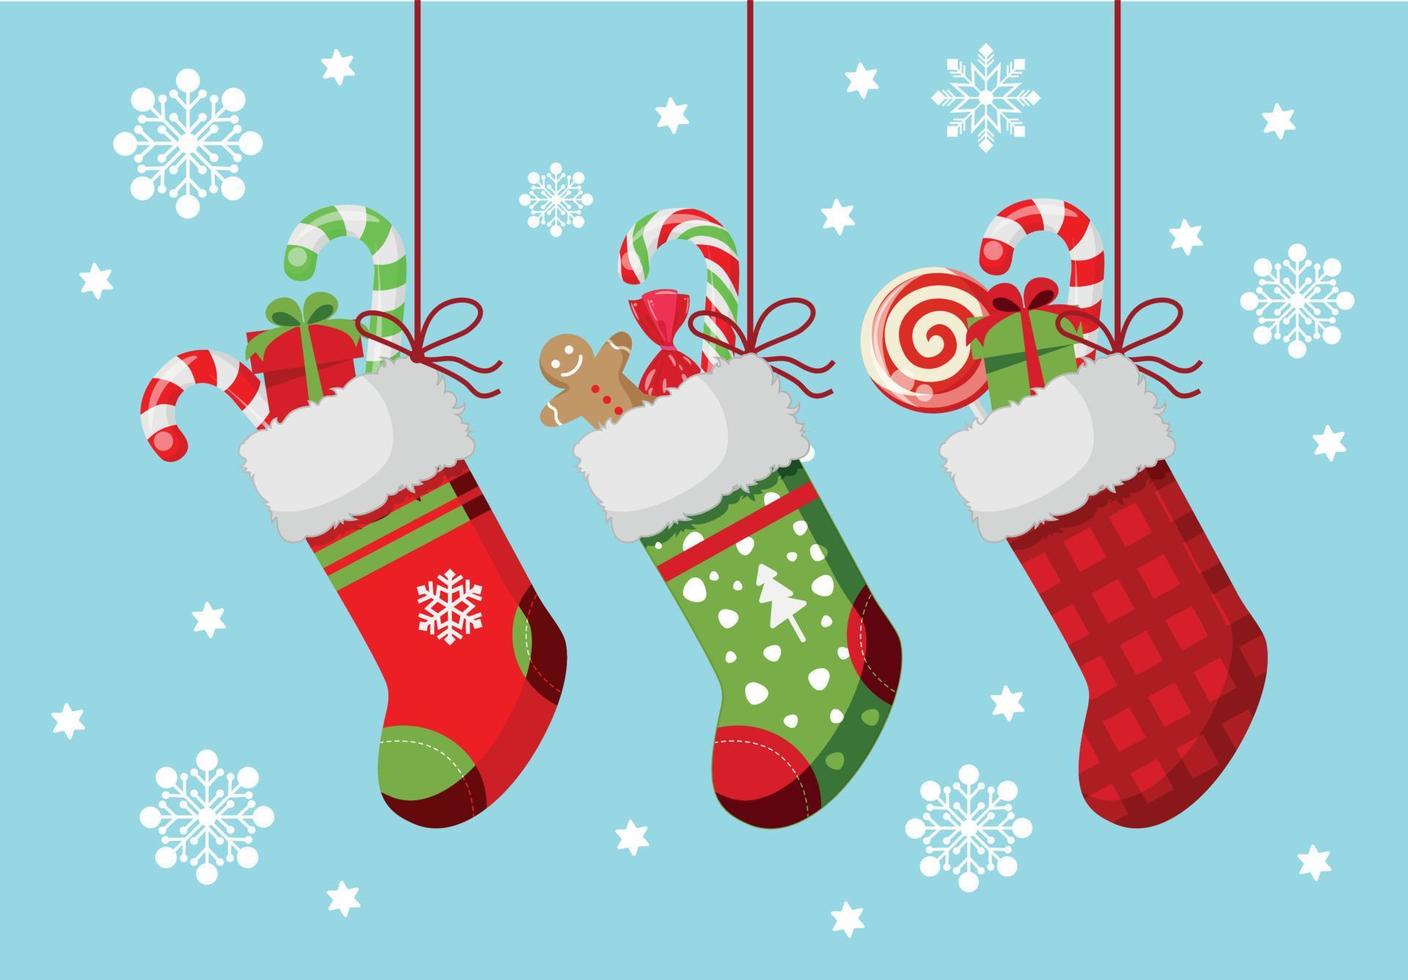 conjunto de calcetines de año nuevo en estilo navideño. zapato rojo con piruletas, regalo. calcetín verde con pan de jengibre navideño y caja. calcetín rojo a cuadros con sorpresa. hermoso fondo azul con copos de nieve vector